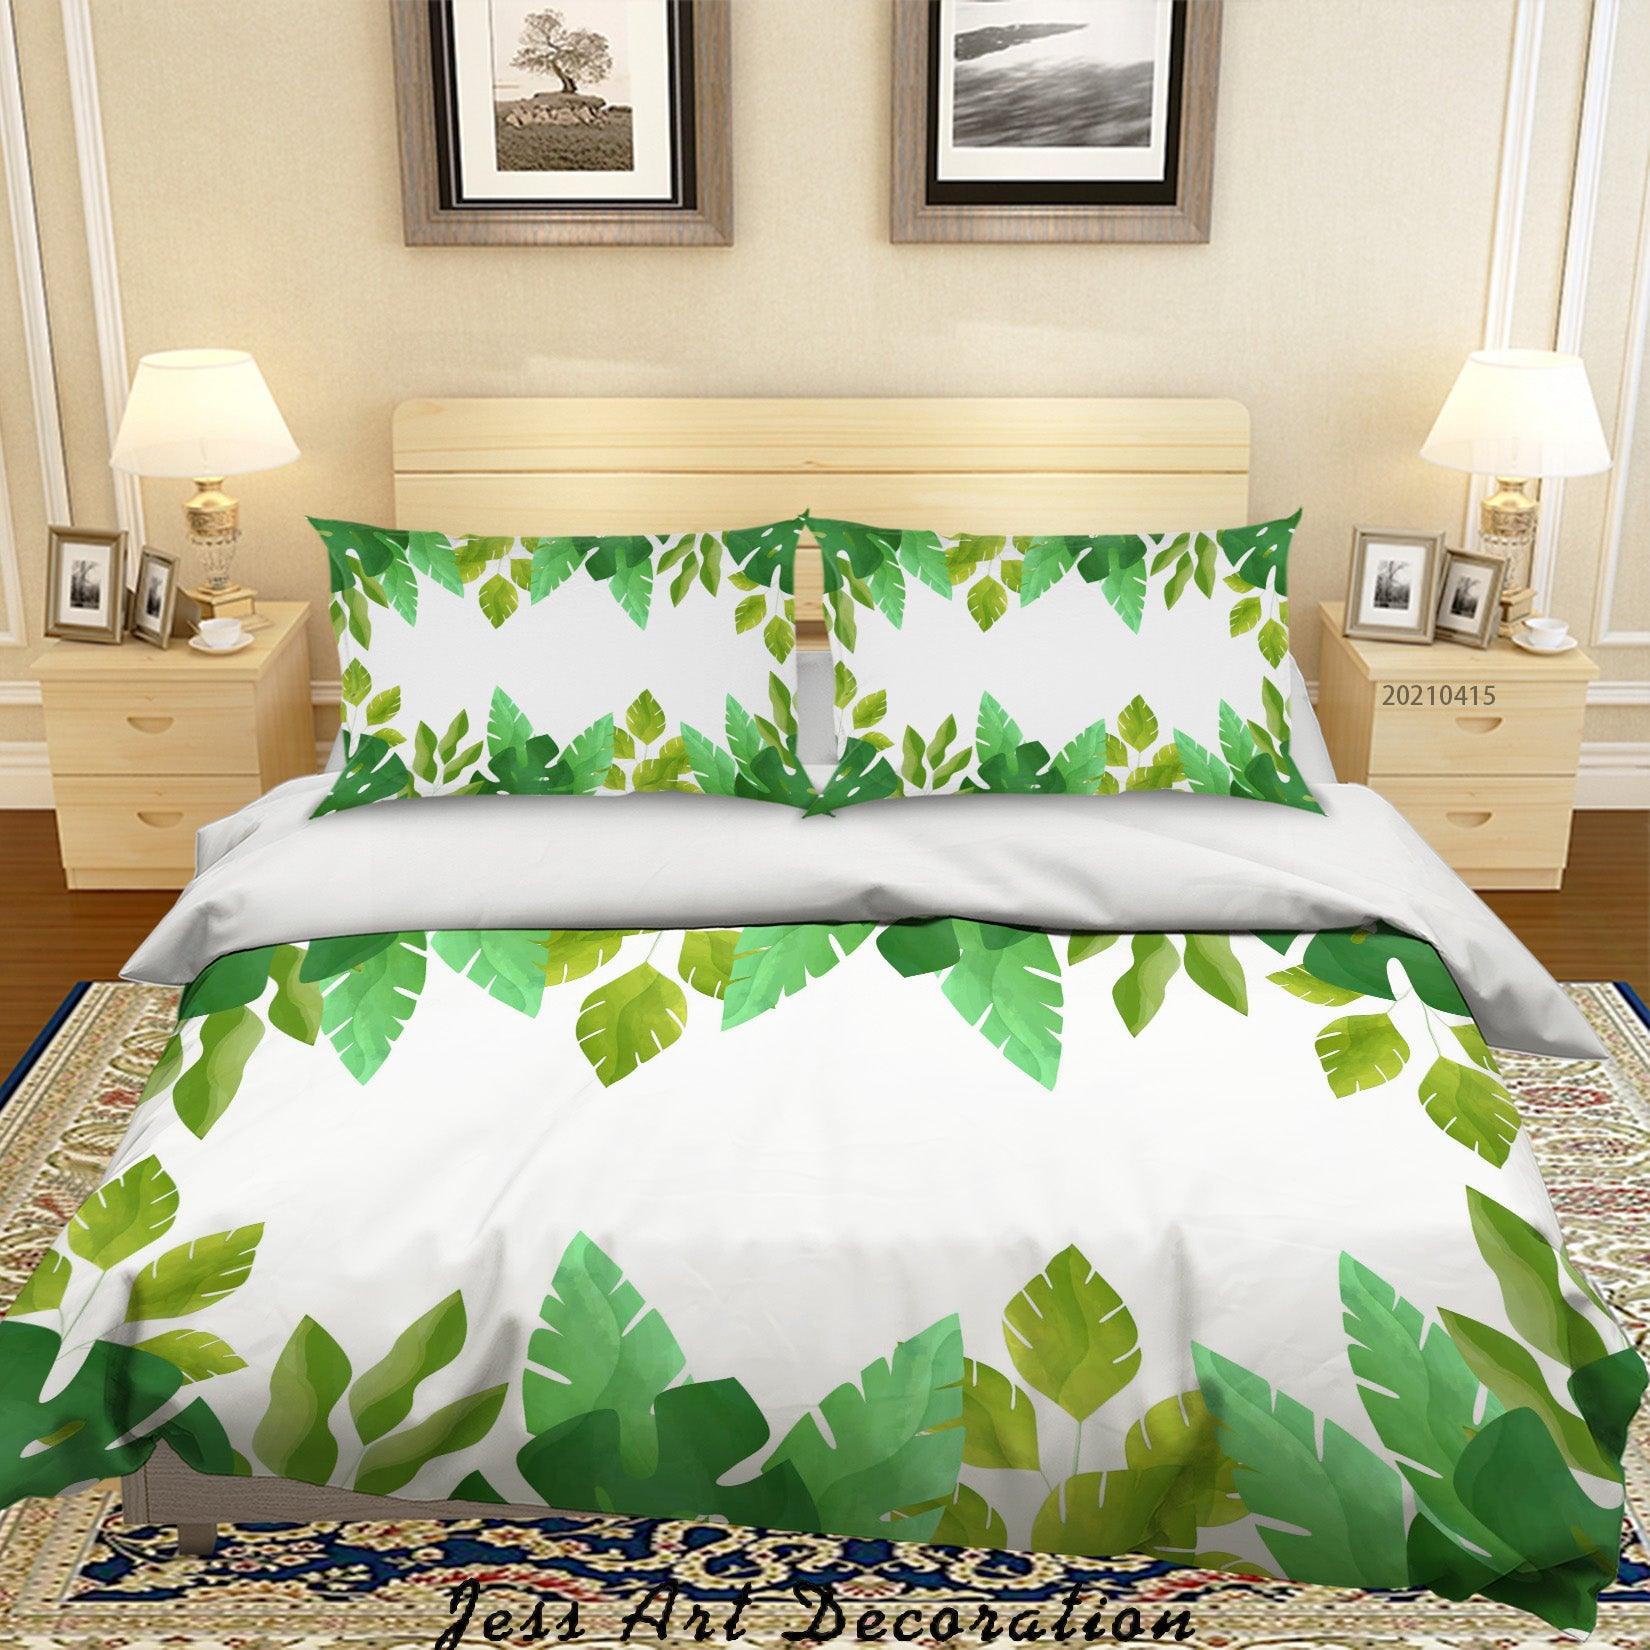 3D Watercolor Green Leaf Quilt Cover Set Bedding Set Duvet Cover Pillowcases 111- Jess Art Decoration